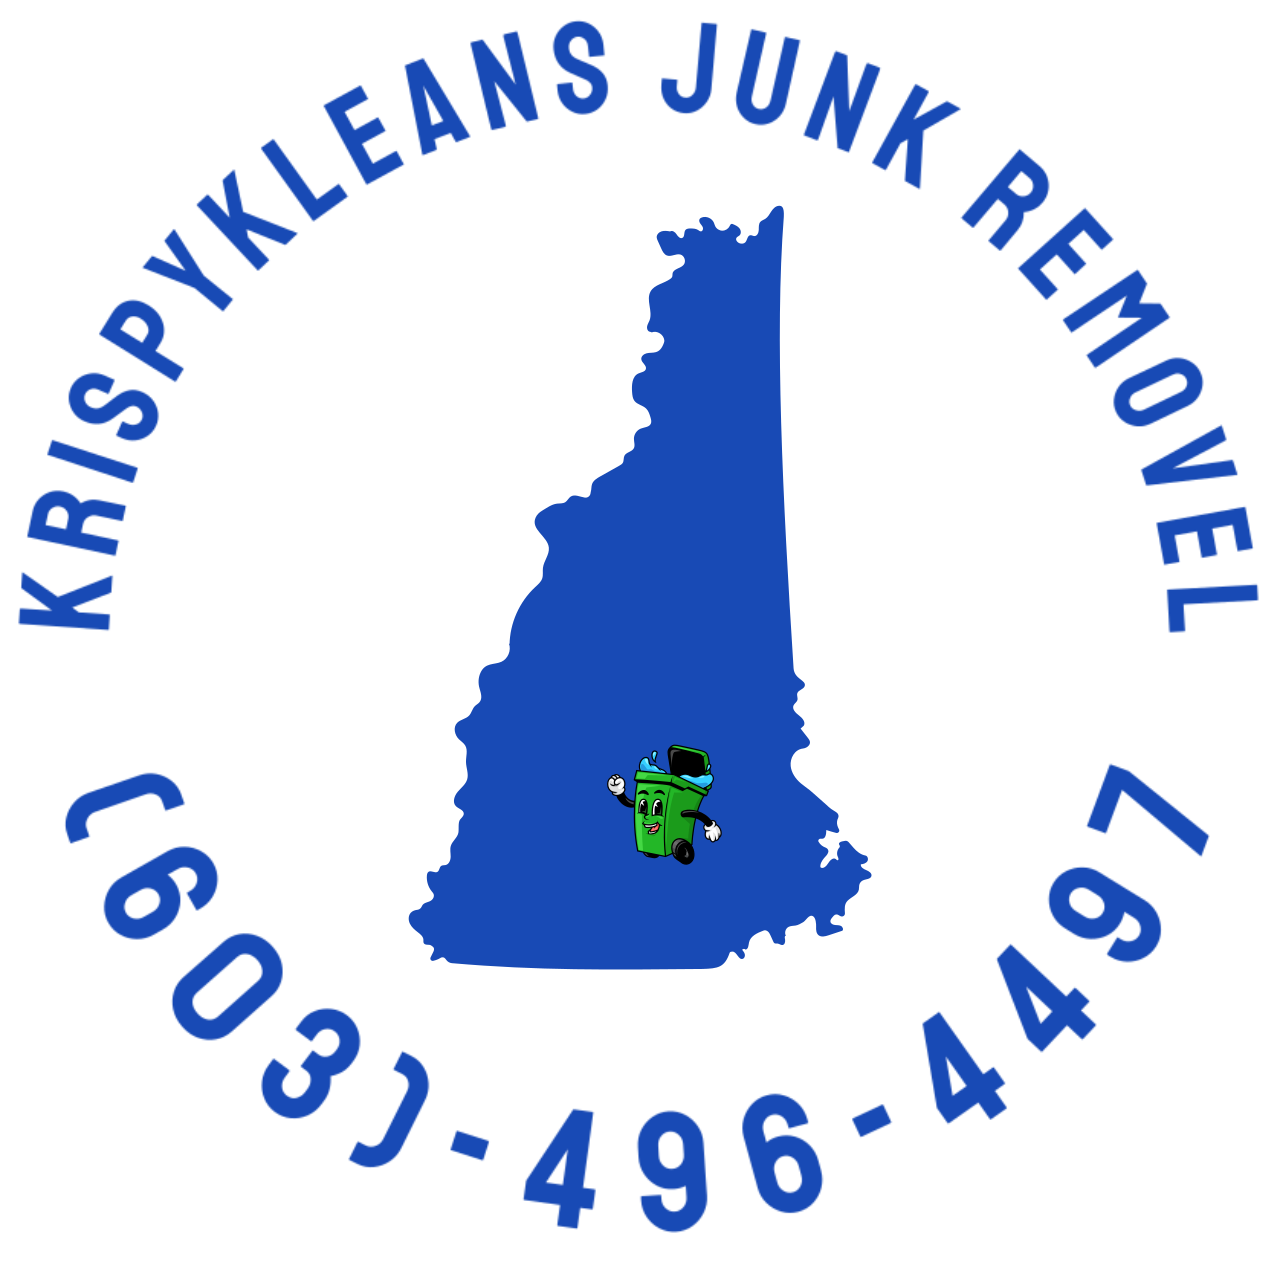 KrispyKleans junk removel's logo